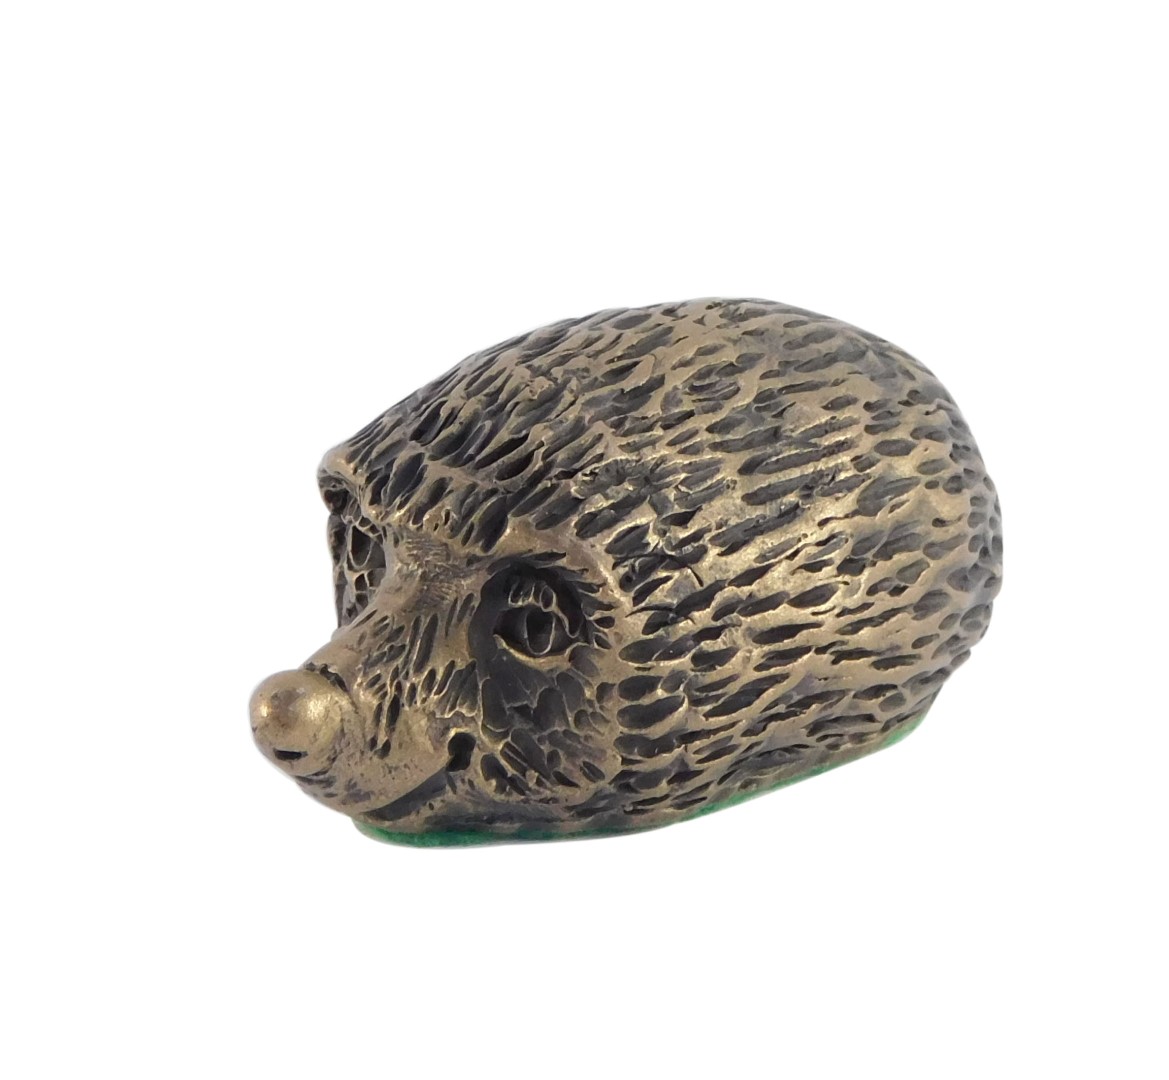 A bronze figure of a hedgehog, 7cm wide.